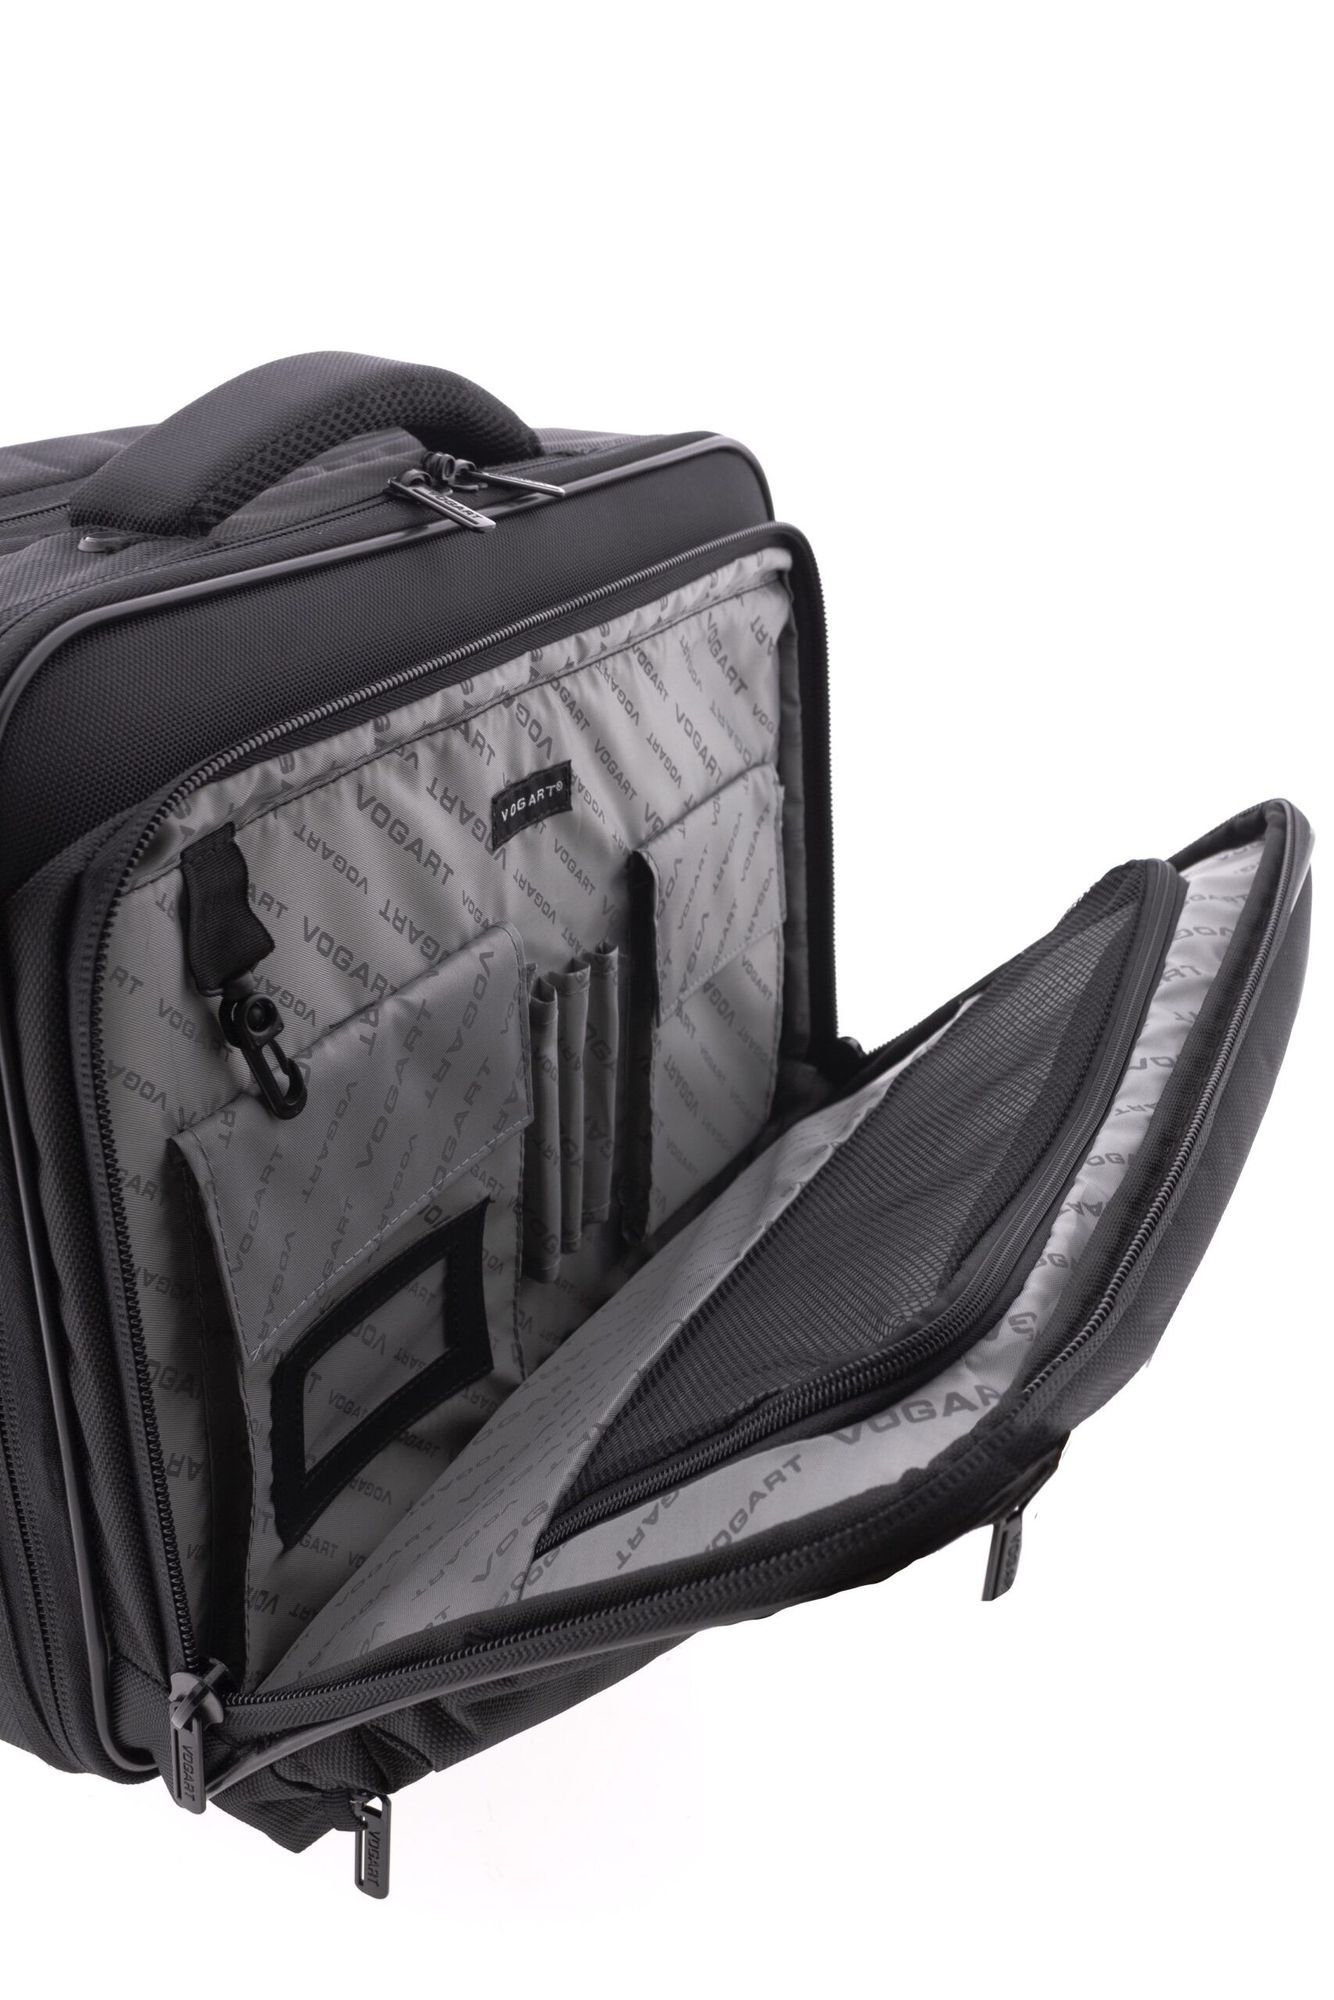 Bolsa con ruedas Vueling Origami  VOGART Bags Official - Mochilas de moda